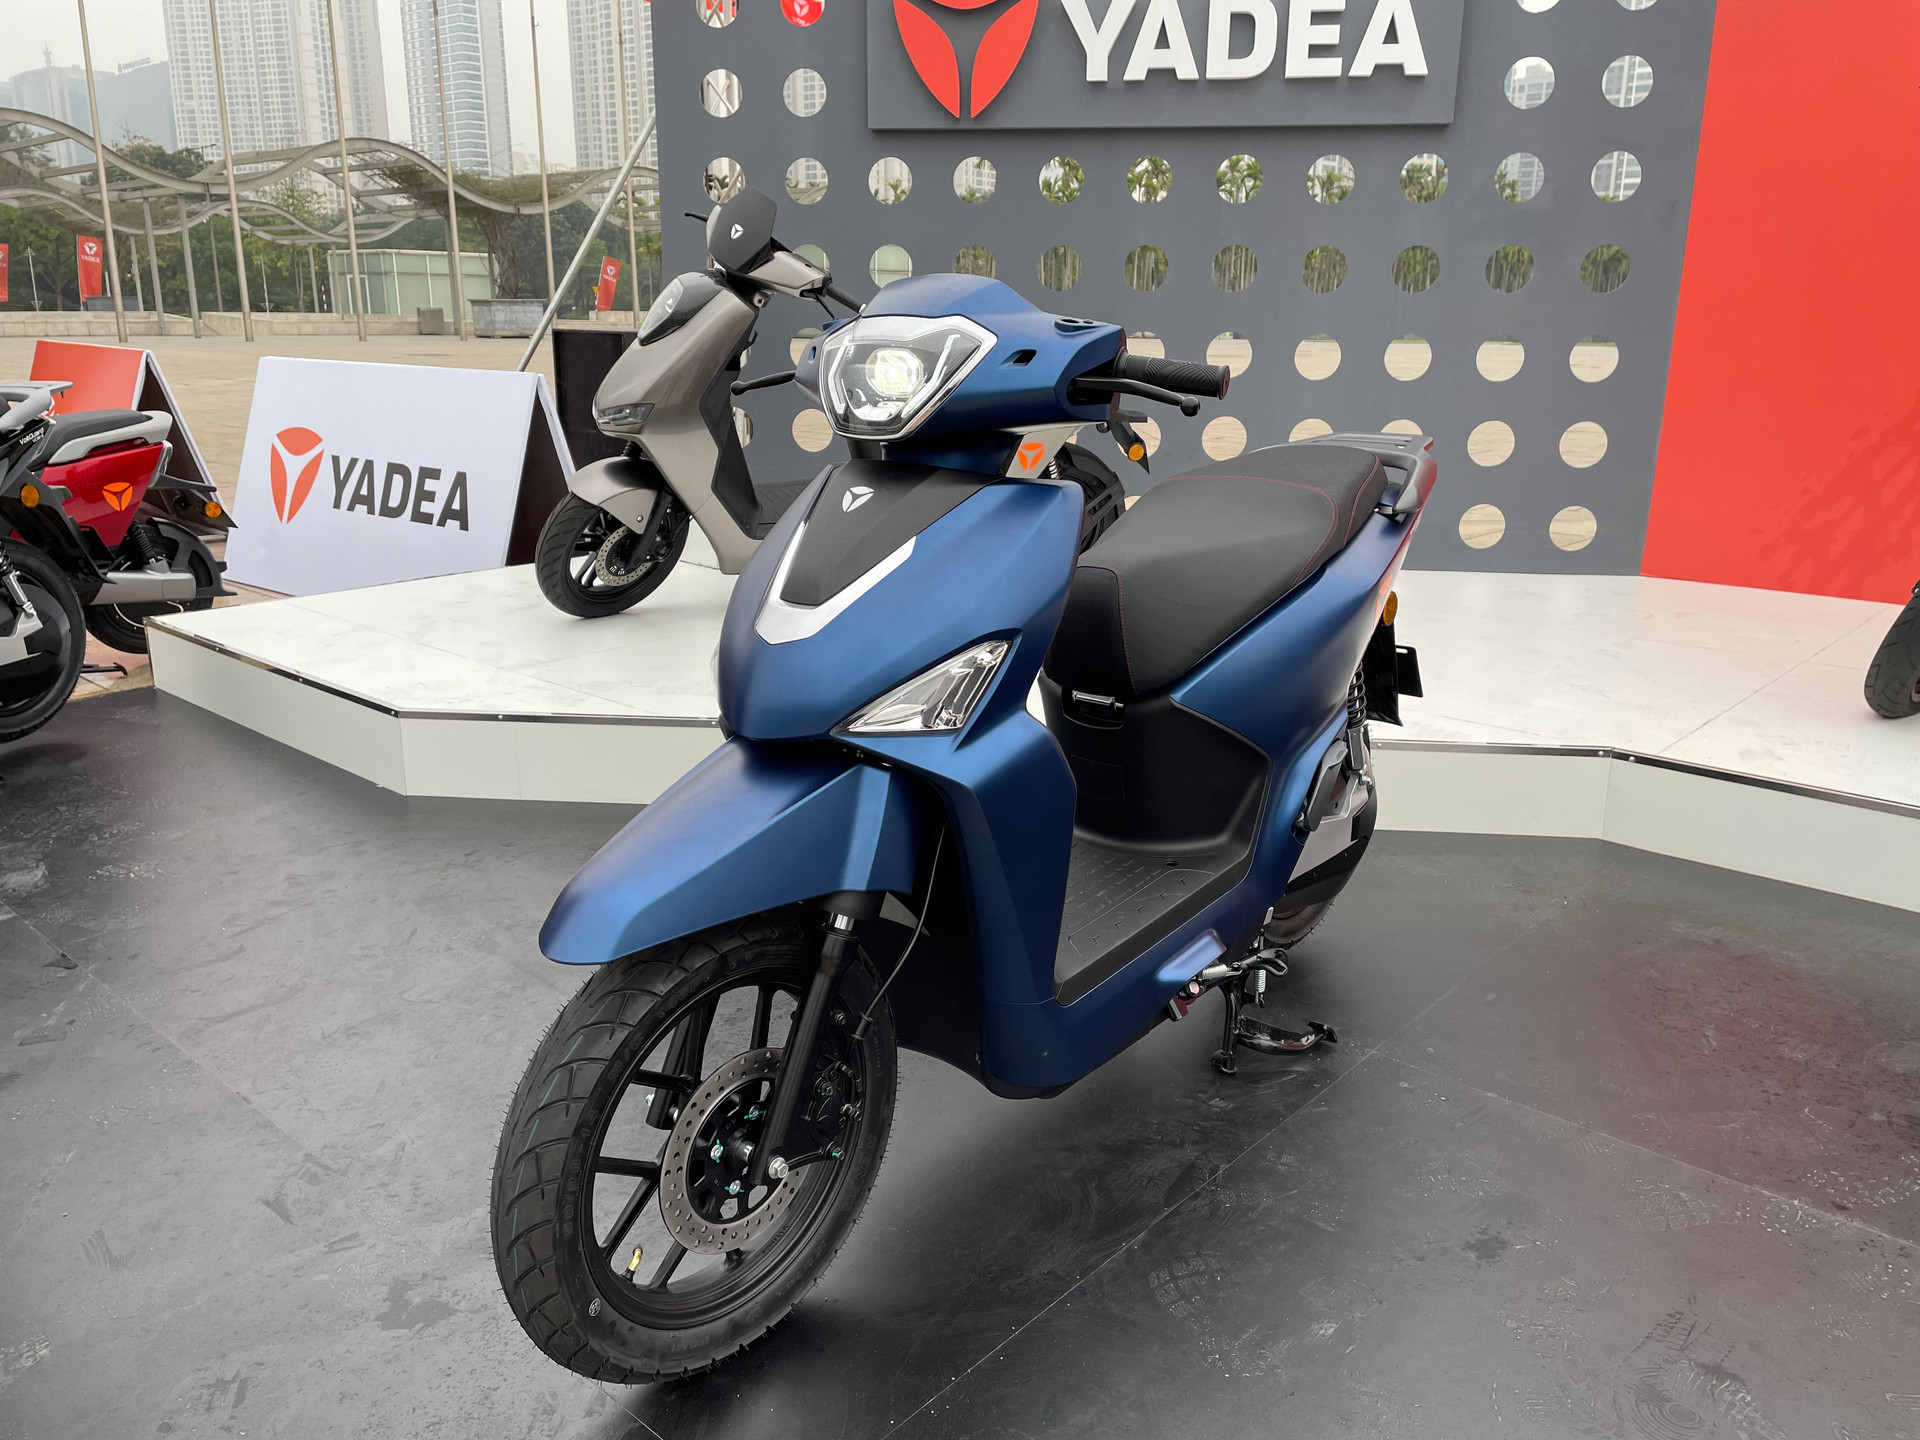 Yedea đưa 3 mẫu xe điện mới vào Việt Nam - có cả mô tô thể thao, giá cao nhất ngang ngửa Honda SH - Ảnh 1.